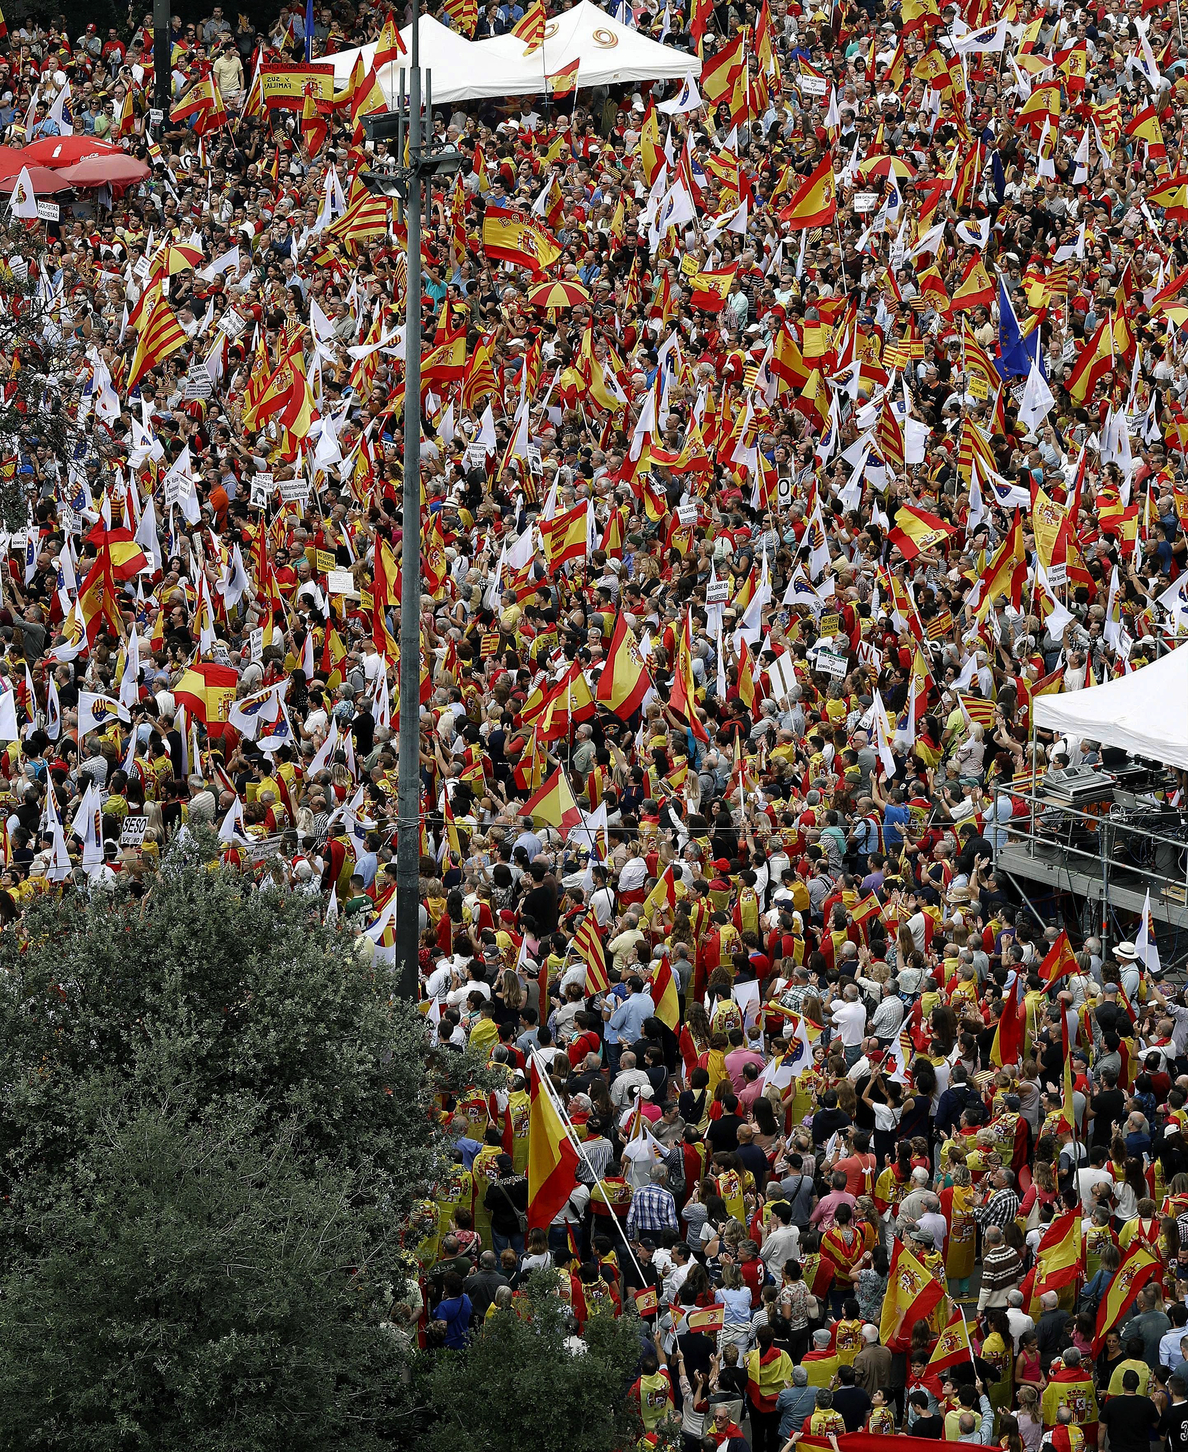 Miles de personas se manifiestan en Barcelona el Día de la Hispanidad